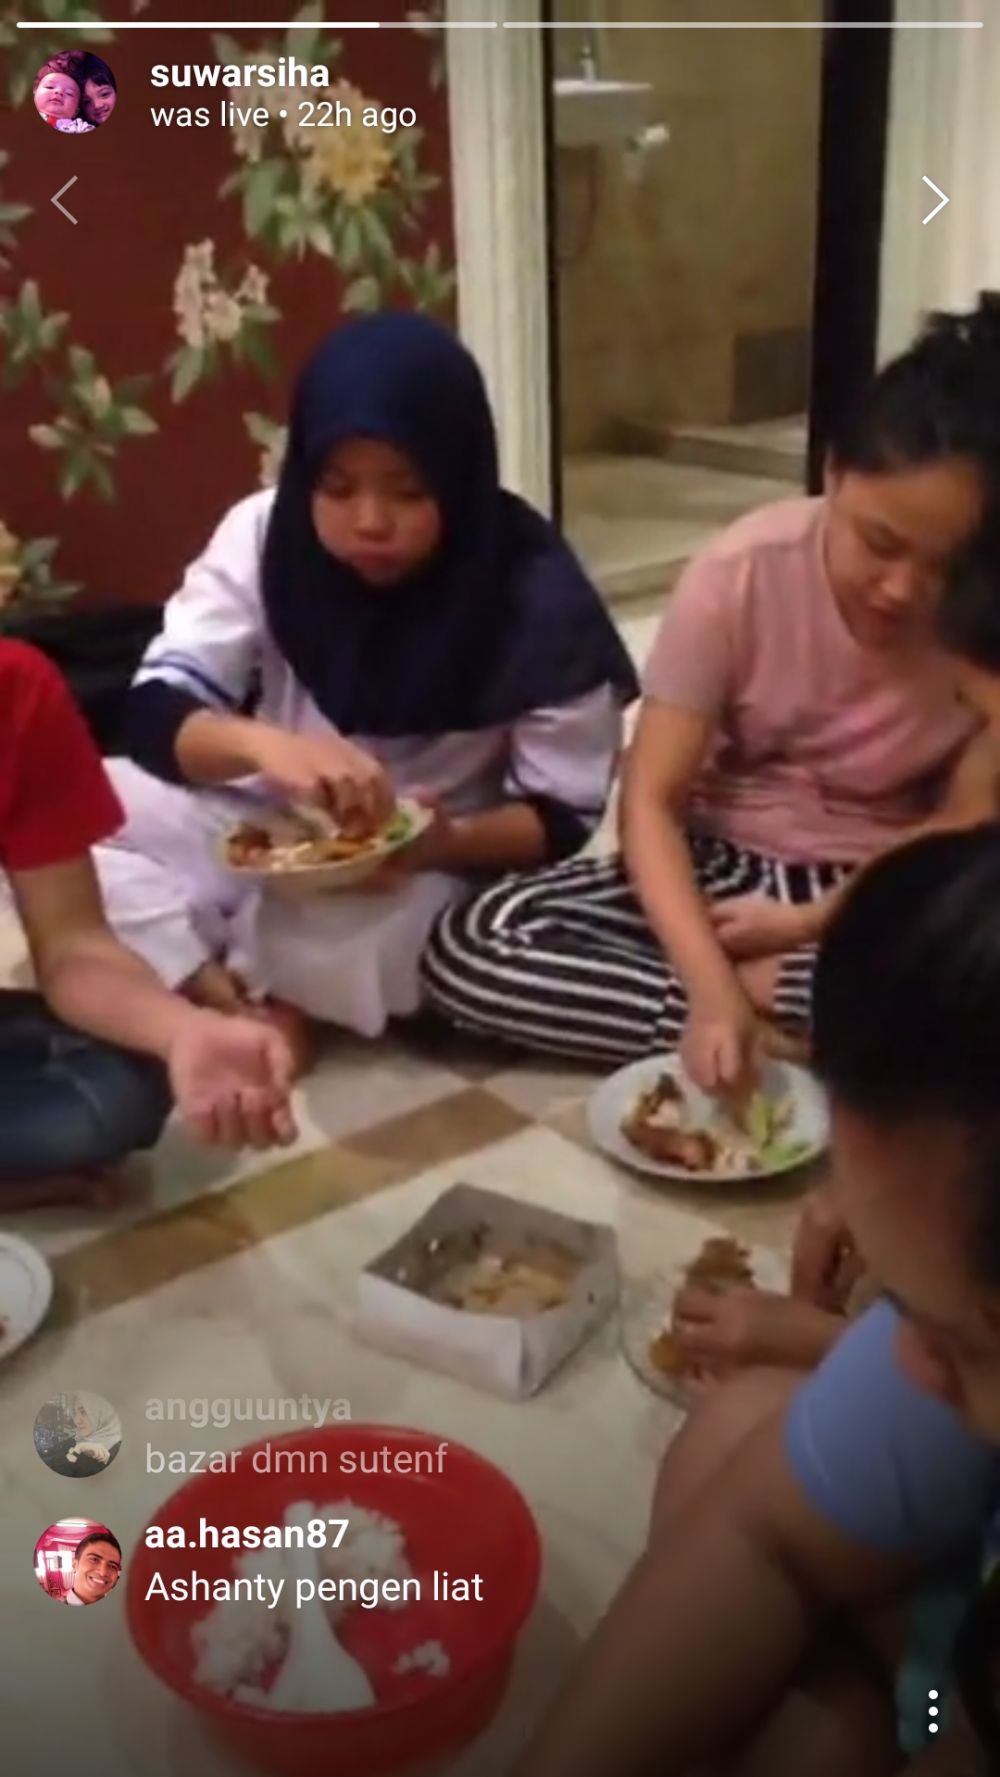 Begini momen sederhana keluarga Ashanty saat makan bareng ART